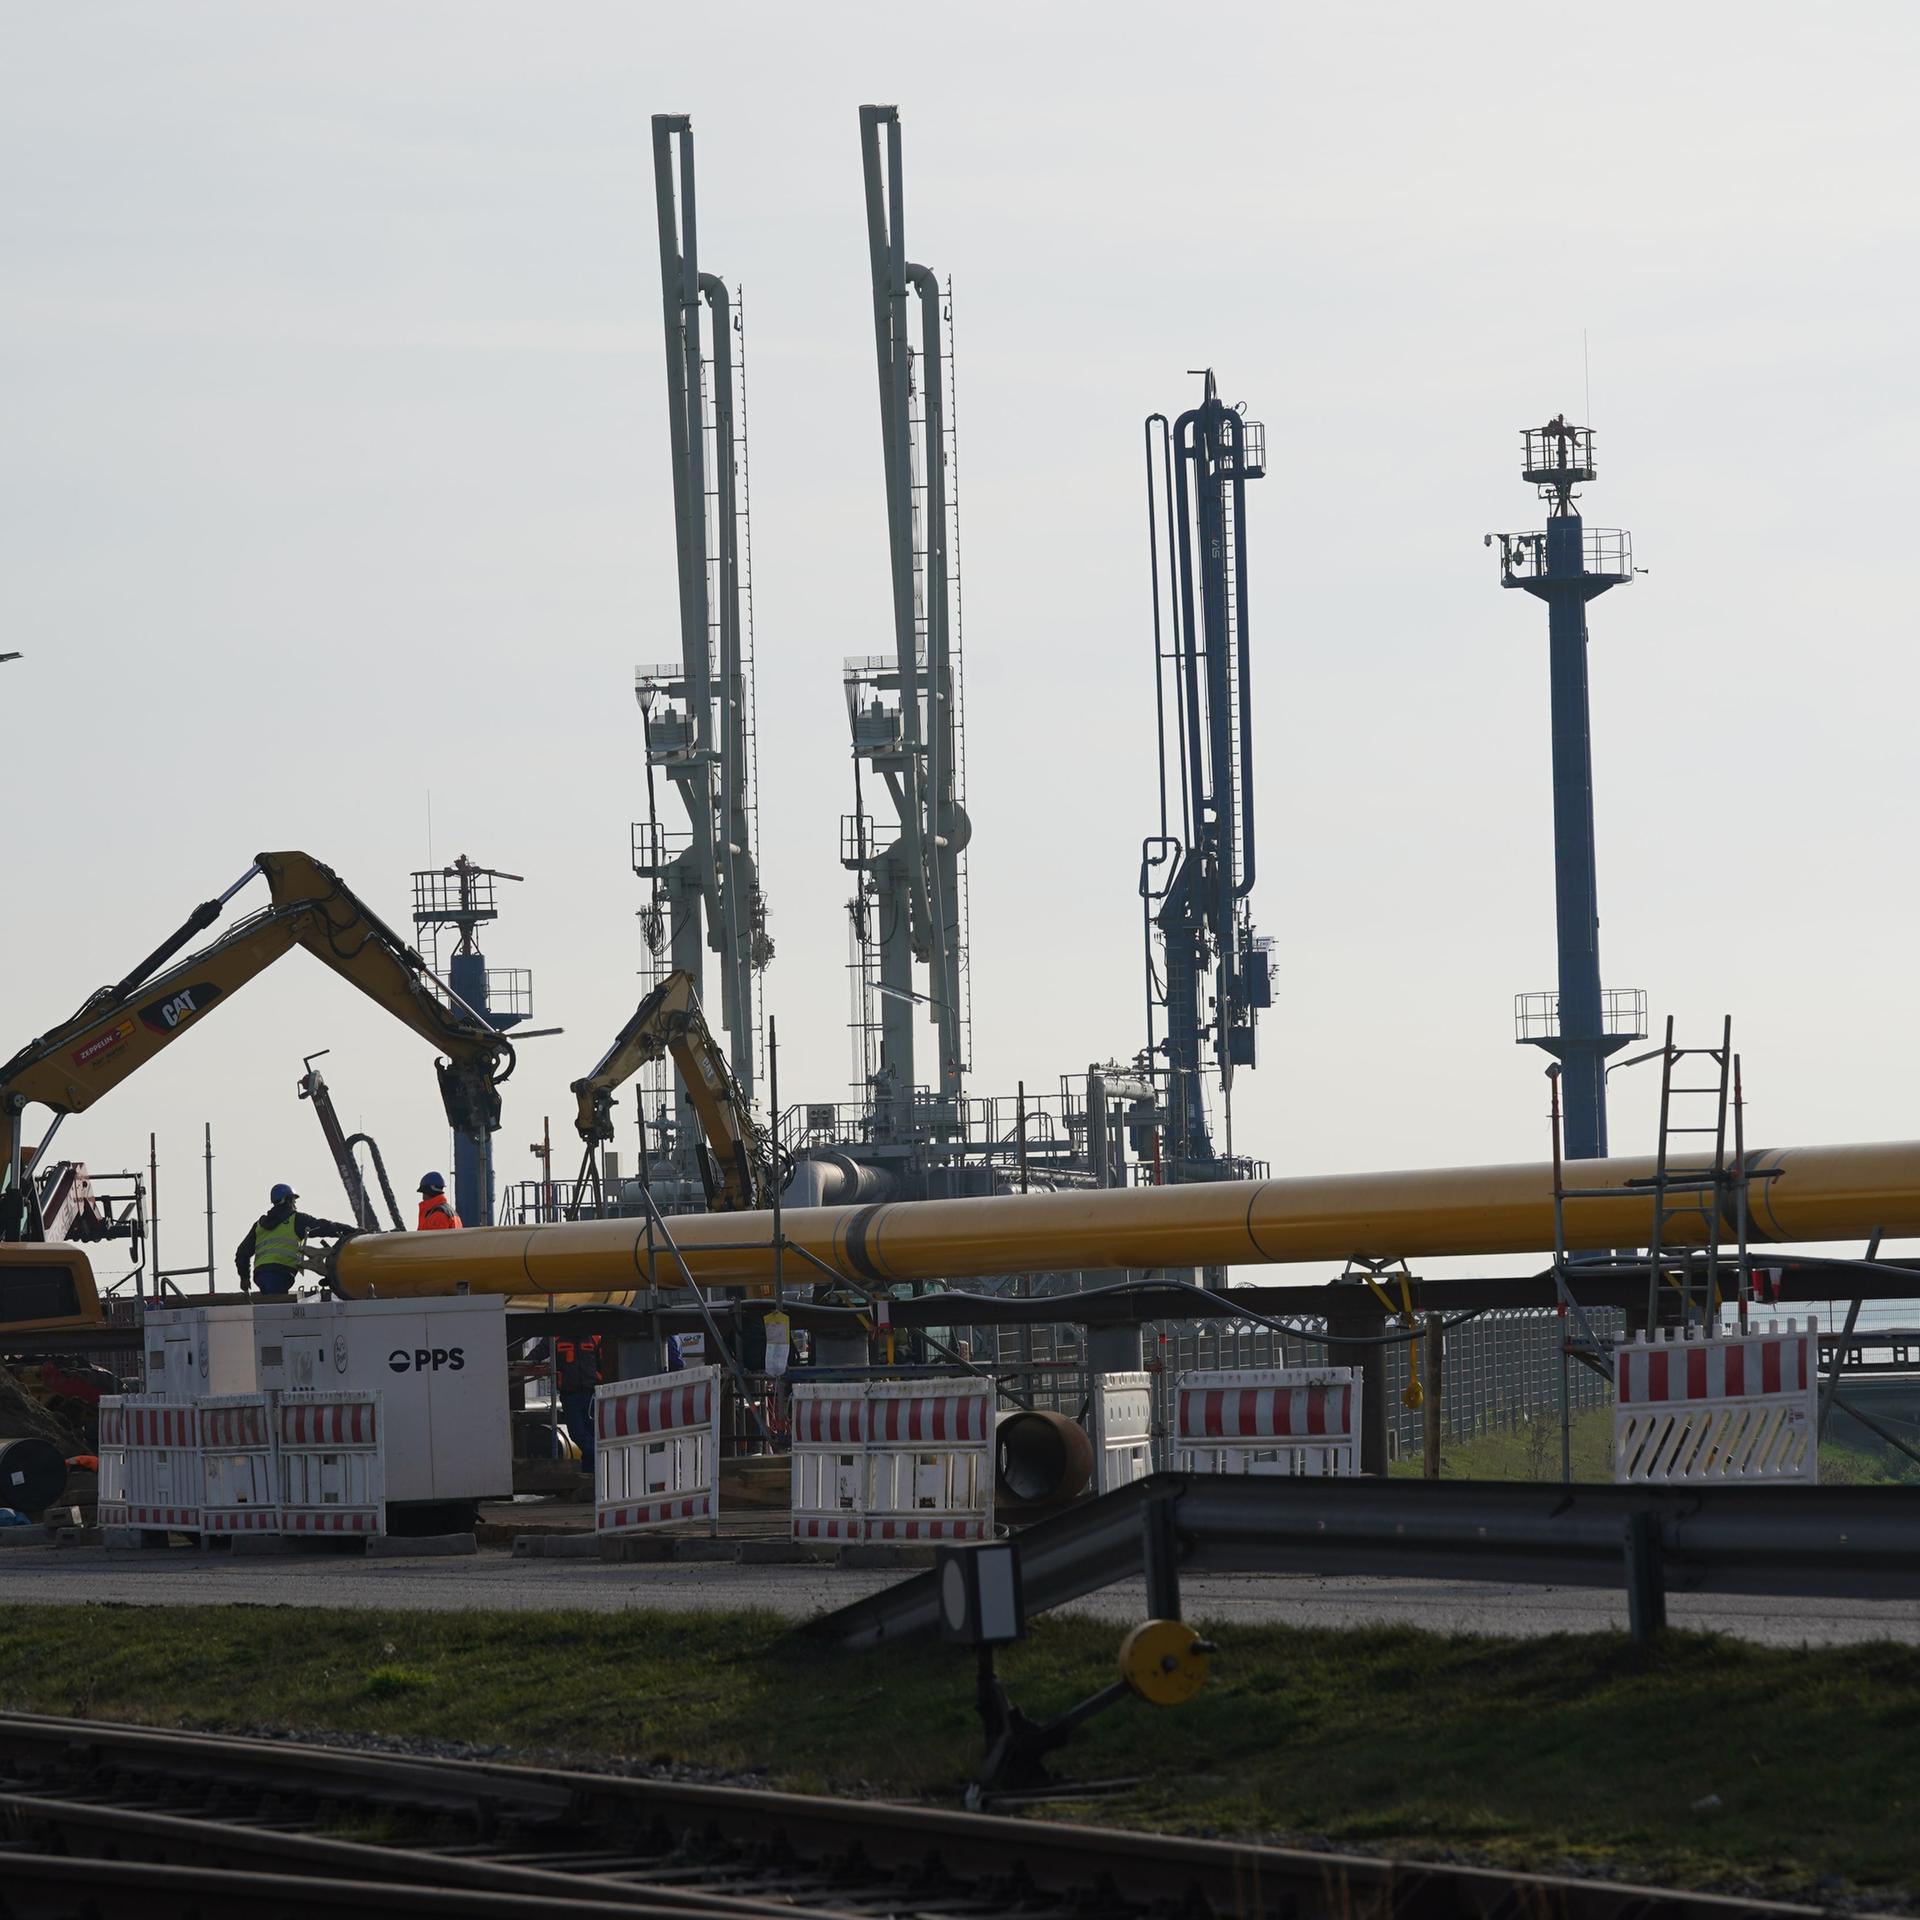 Arbeiter bauen Gas-Pipelines für den geplanten LNG Flüssiggas-Schwimmterminal zusammen. Das Schwimmterminal soll noch in diesem Jahr seine Arbeit aufnehmen. Der erste LNG-Tanker soll Ende Dezember in Brunsbüttel festmachen.